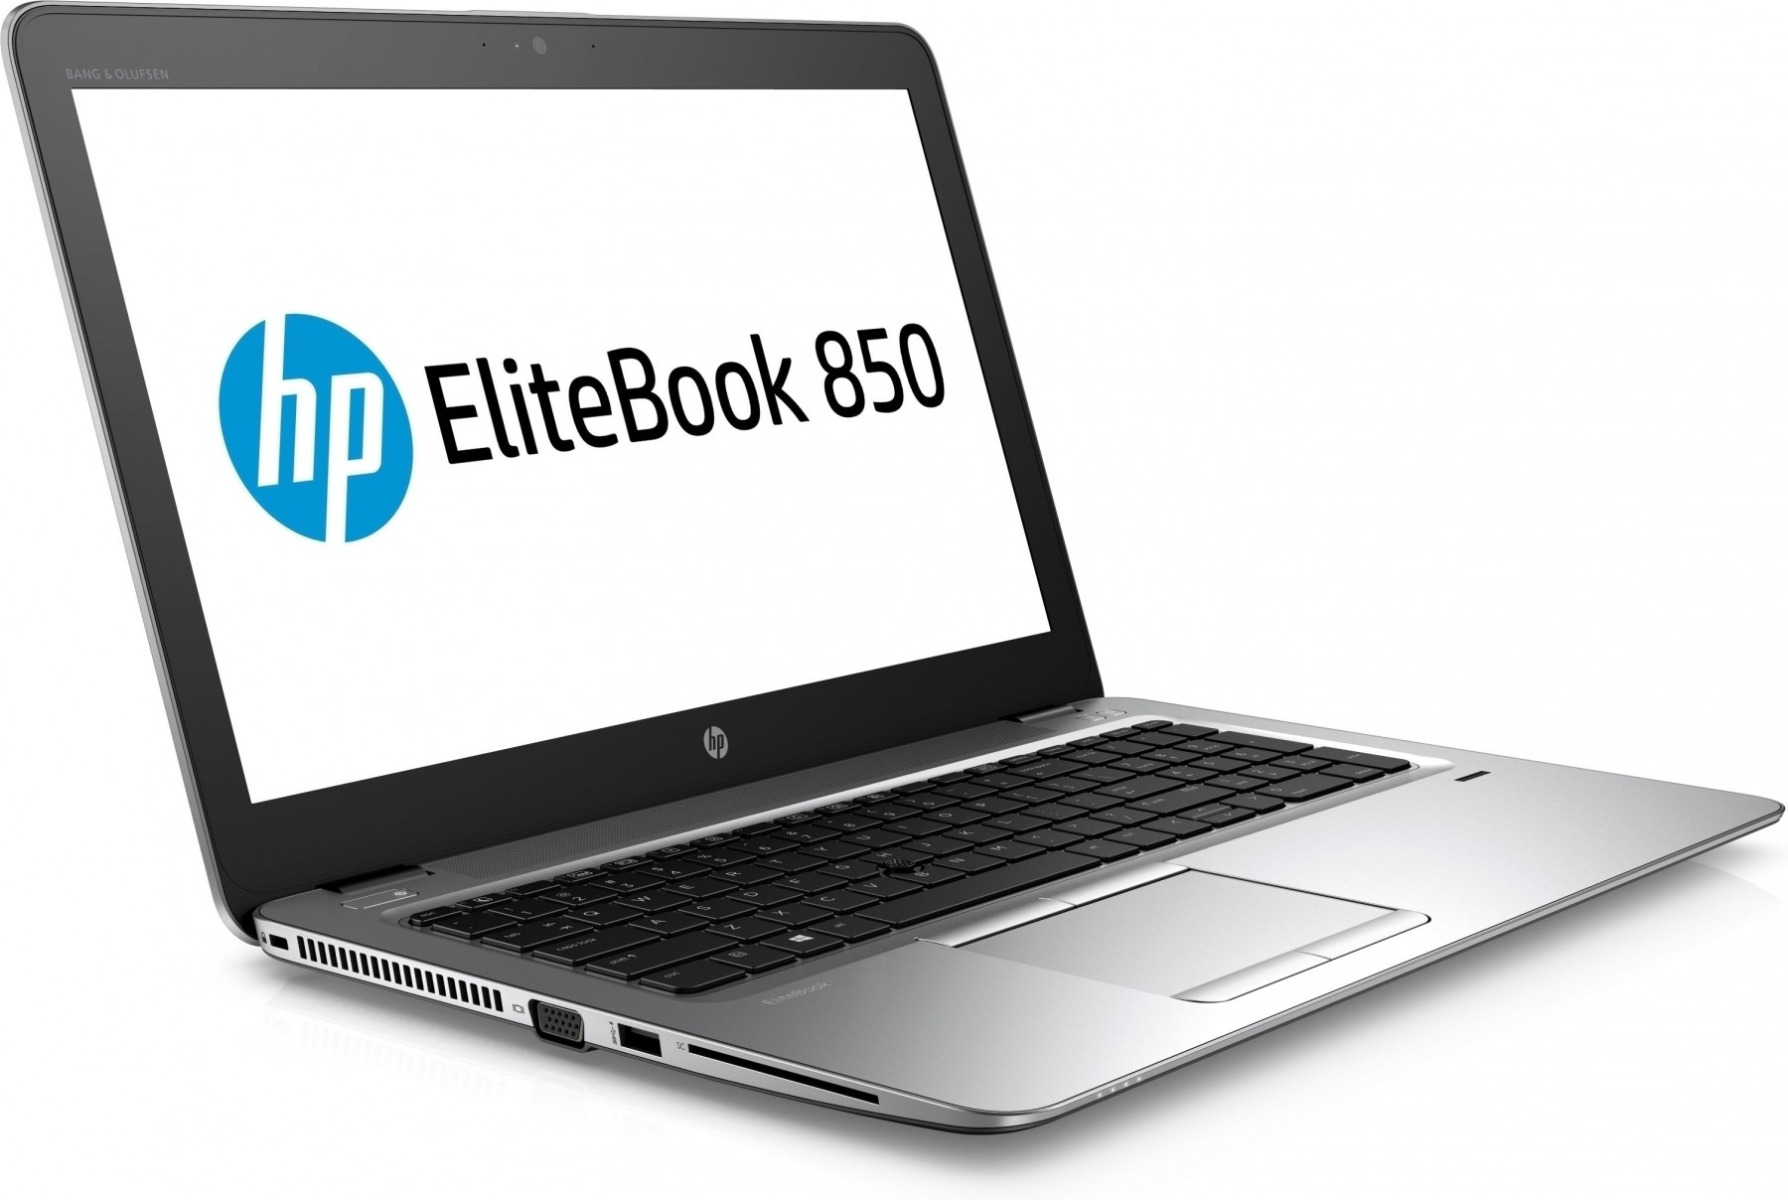  Hp Elitebook 850 G3 laptop/Intel i5-6200U/256SSD M.2+500GB HDD/8GB DDR4/15.6"FHD/win10 Pro